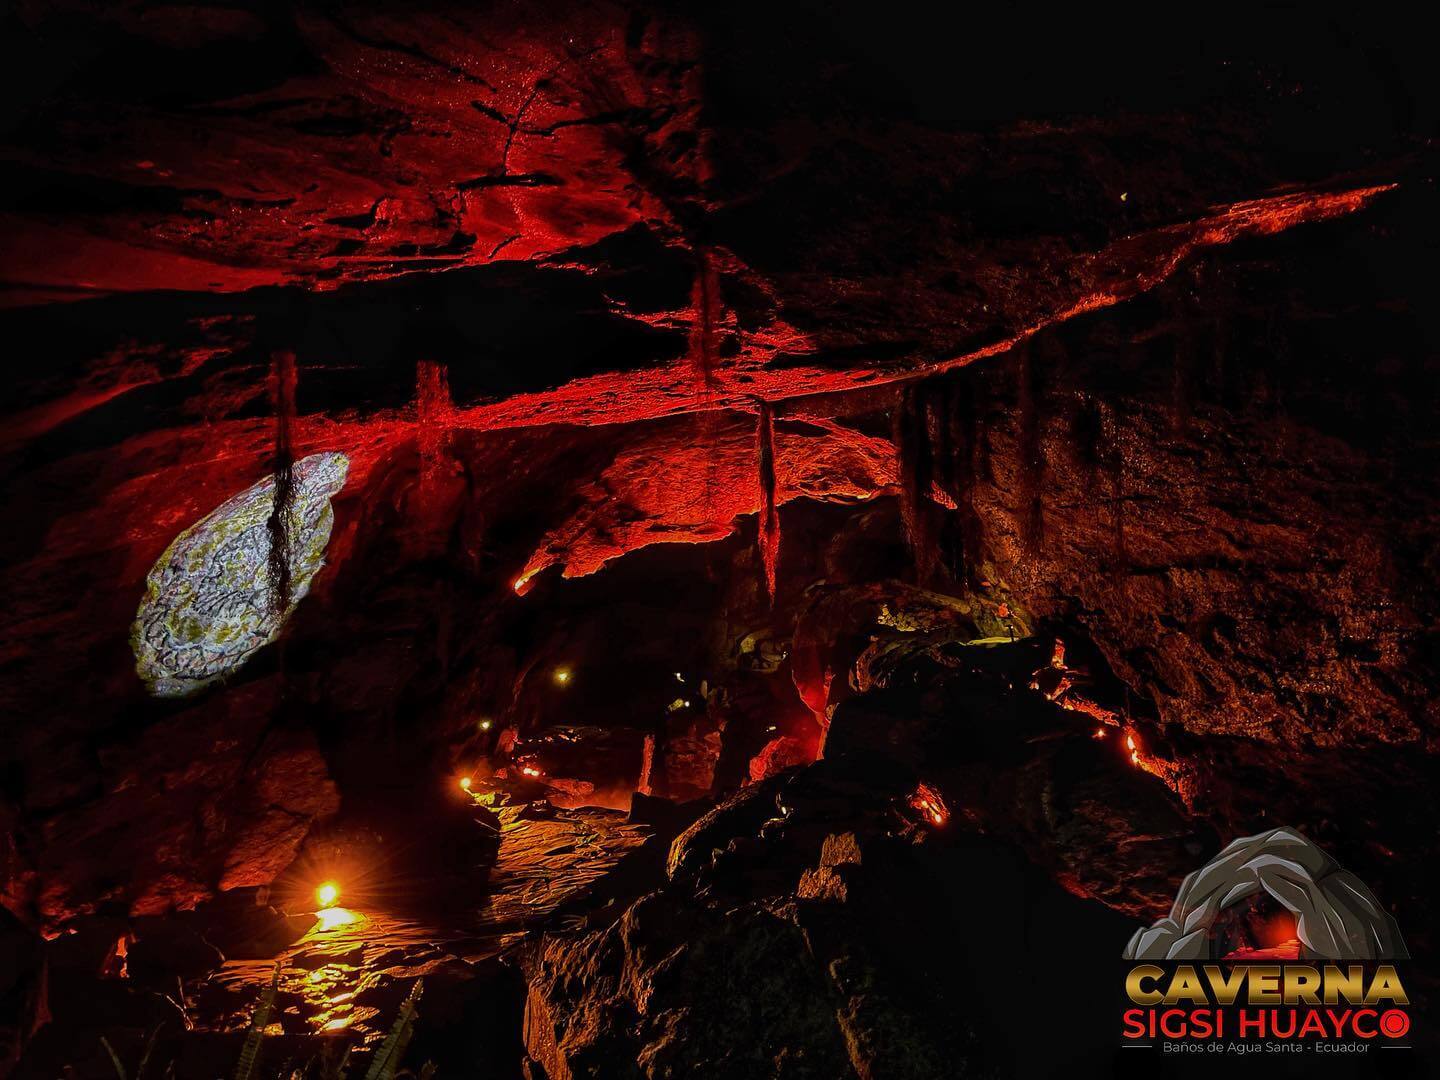 caverna, cueva sigsihuayco, iluminada, turismo en baños de agua santa